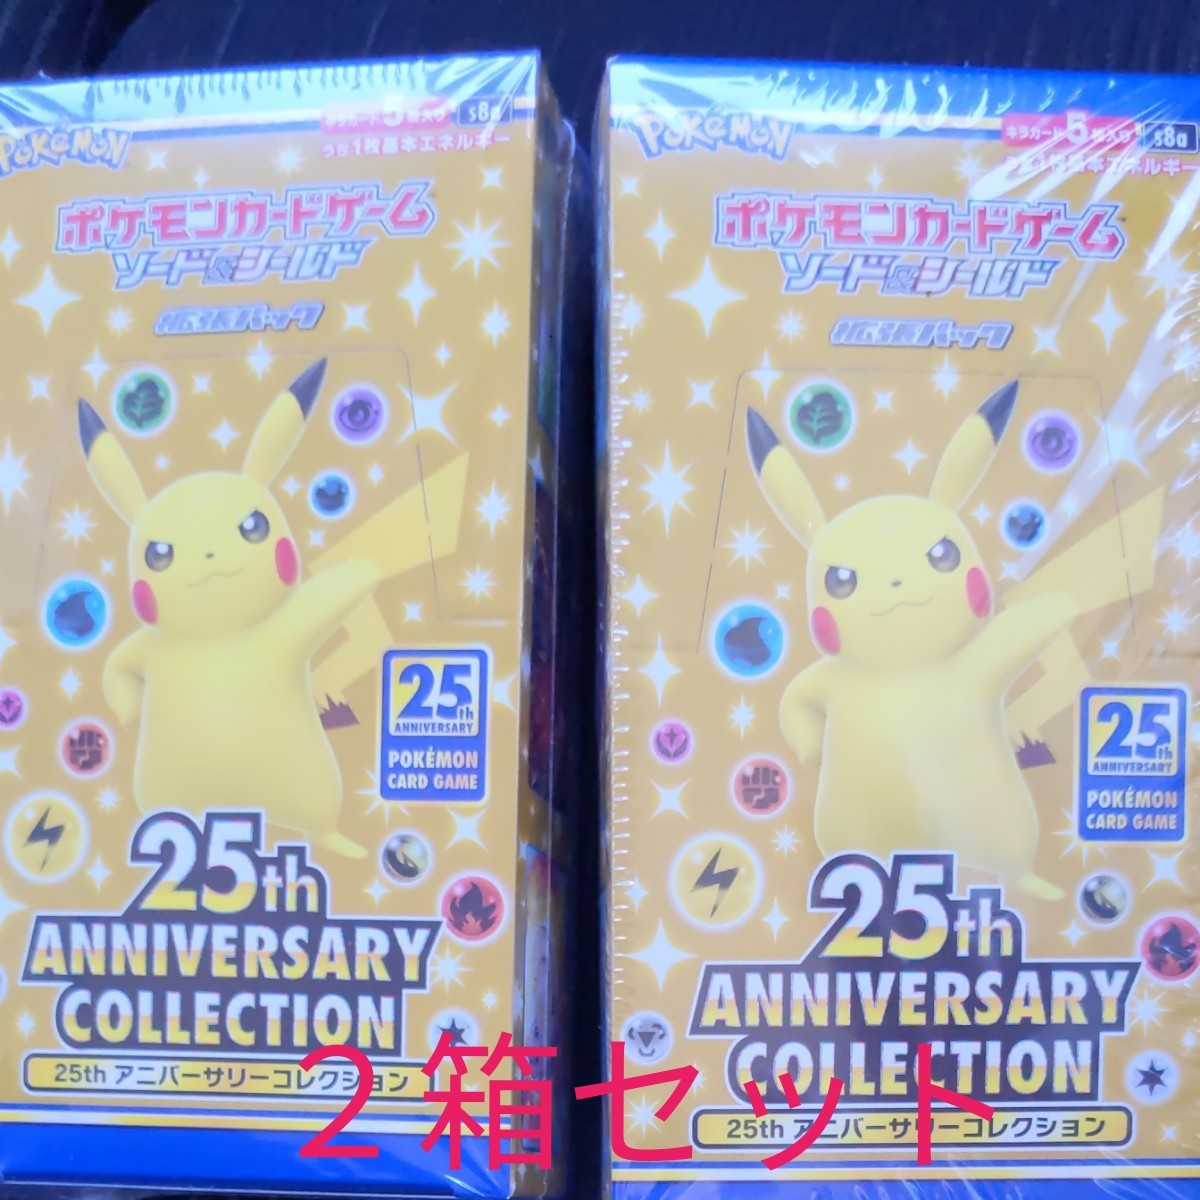 ポケモンカード 25th ANNIVERSARY collection 二箱セット アニコレ